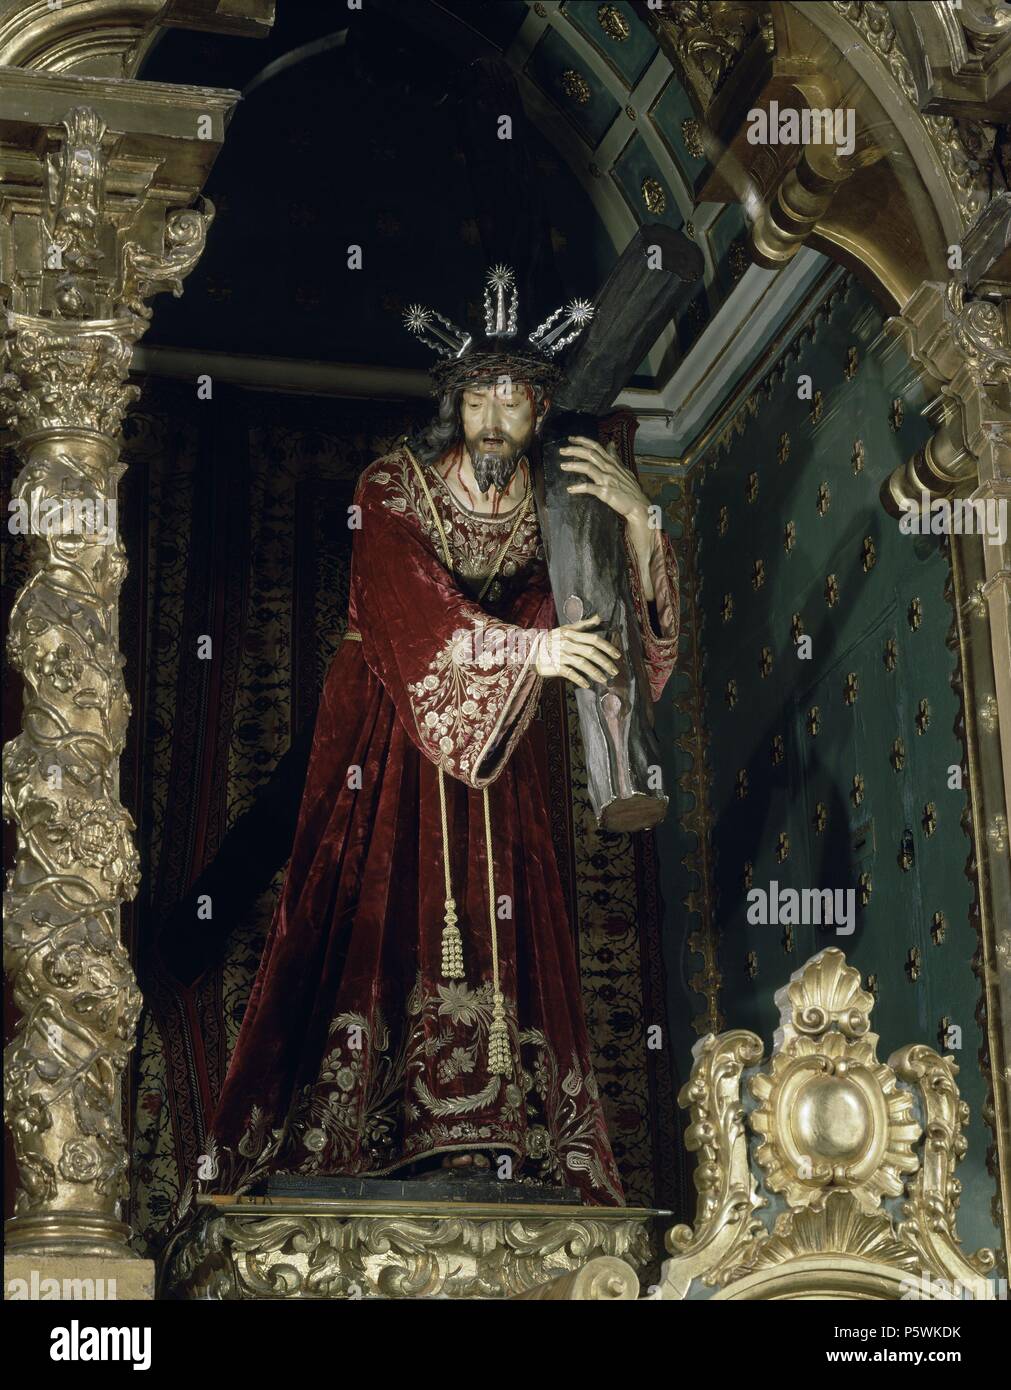 ESCULTURA-JESUS DE NAZARENO. Author: Luisa Roldán (1654-1704). Location: MONASTERIO DE NUESTRO PADRE JESUS, SISANTE, CUENCA, SPAIN. Stock Photo